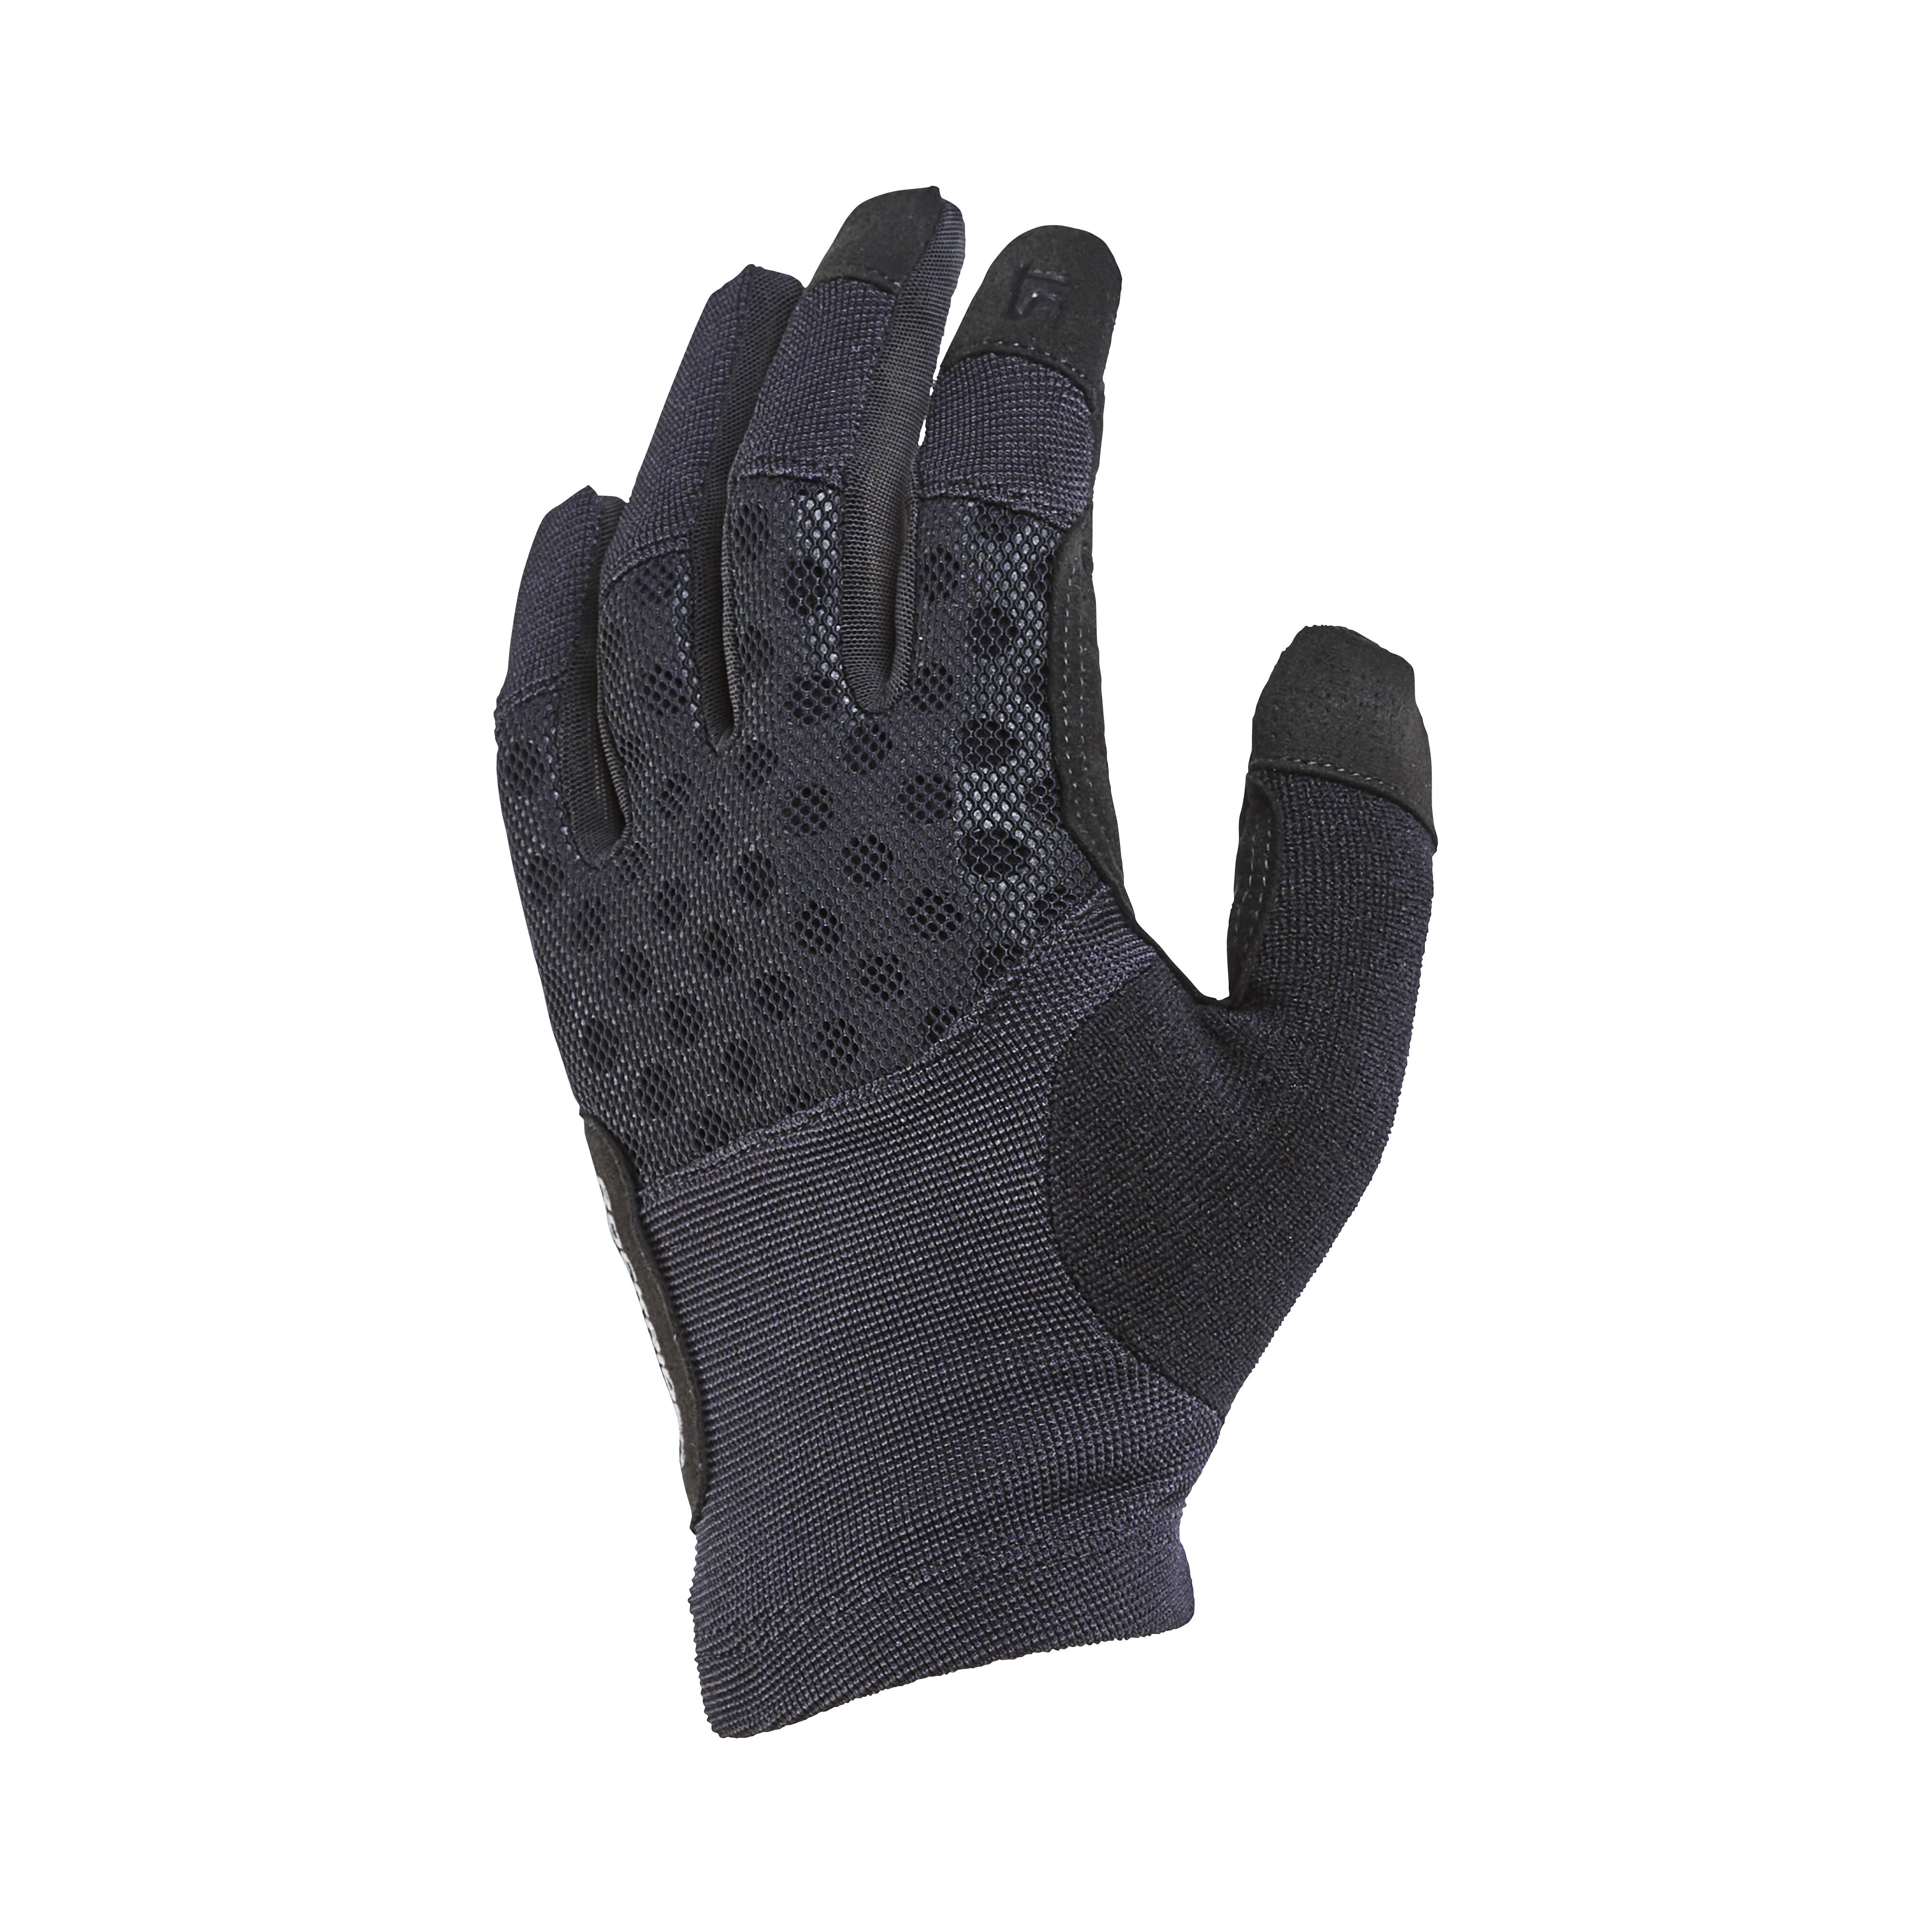 DECATHLON paire de gants cyclisme route hiver BTWIN taille XL 